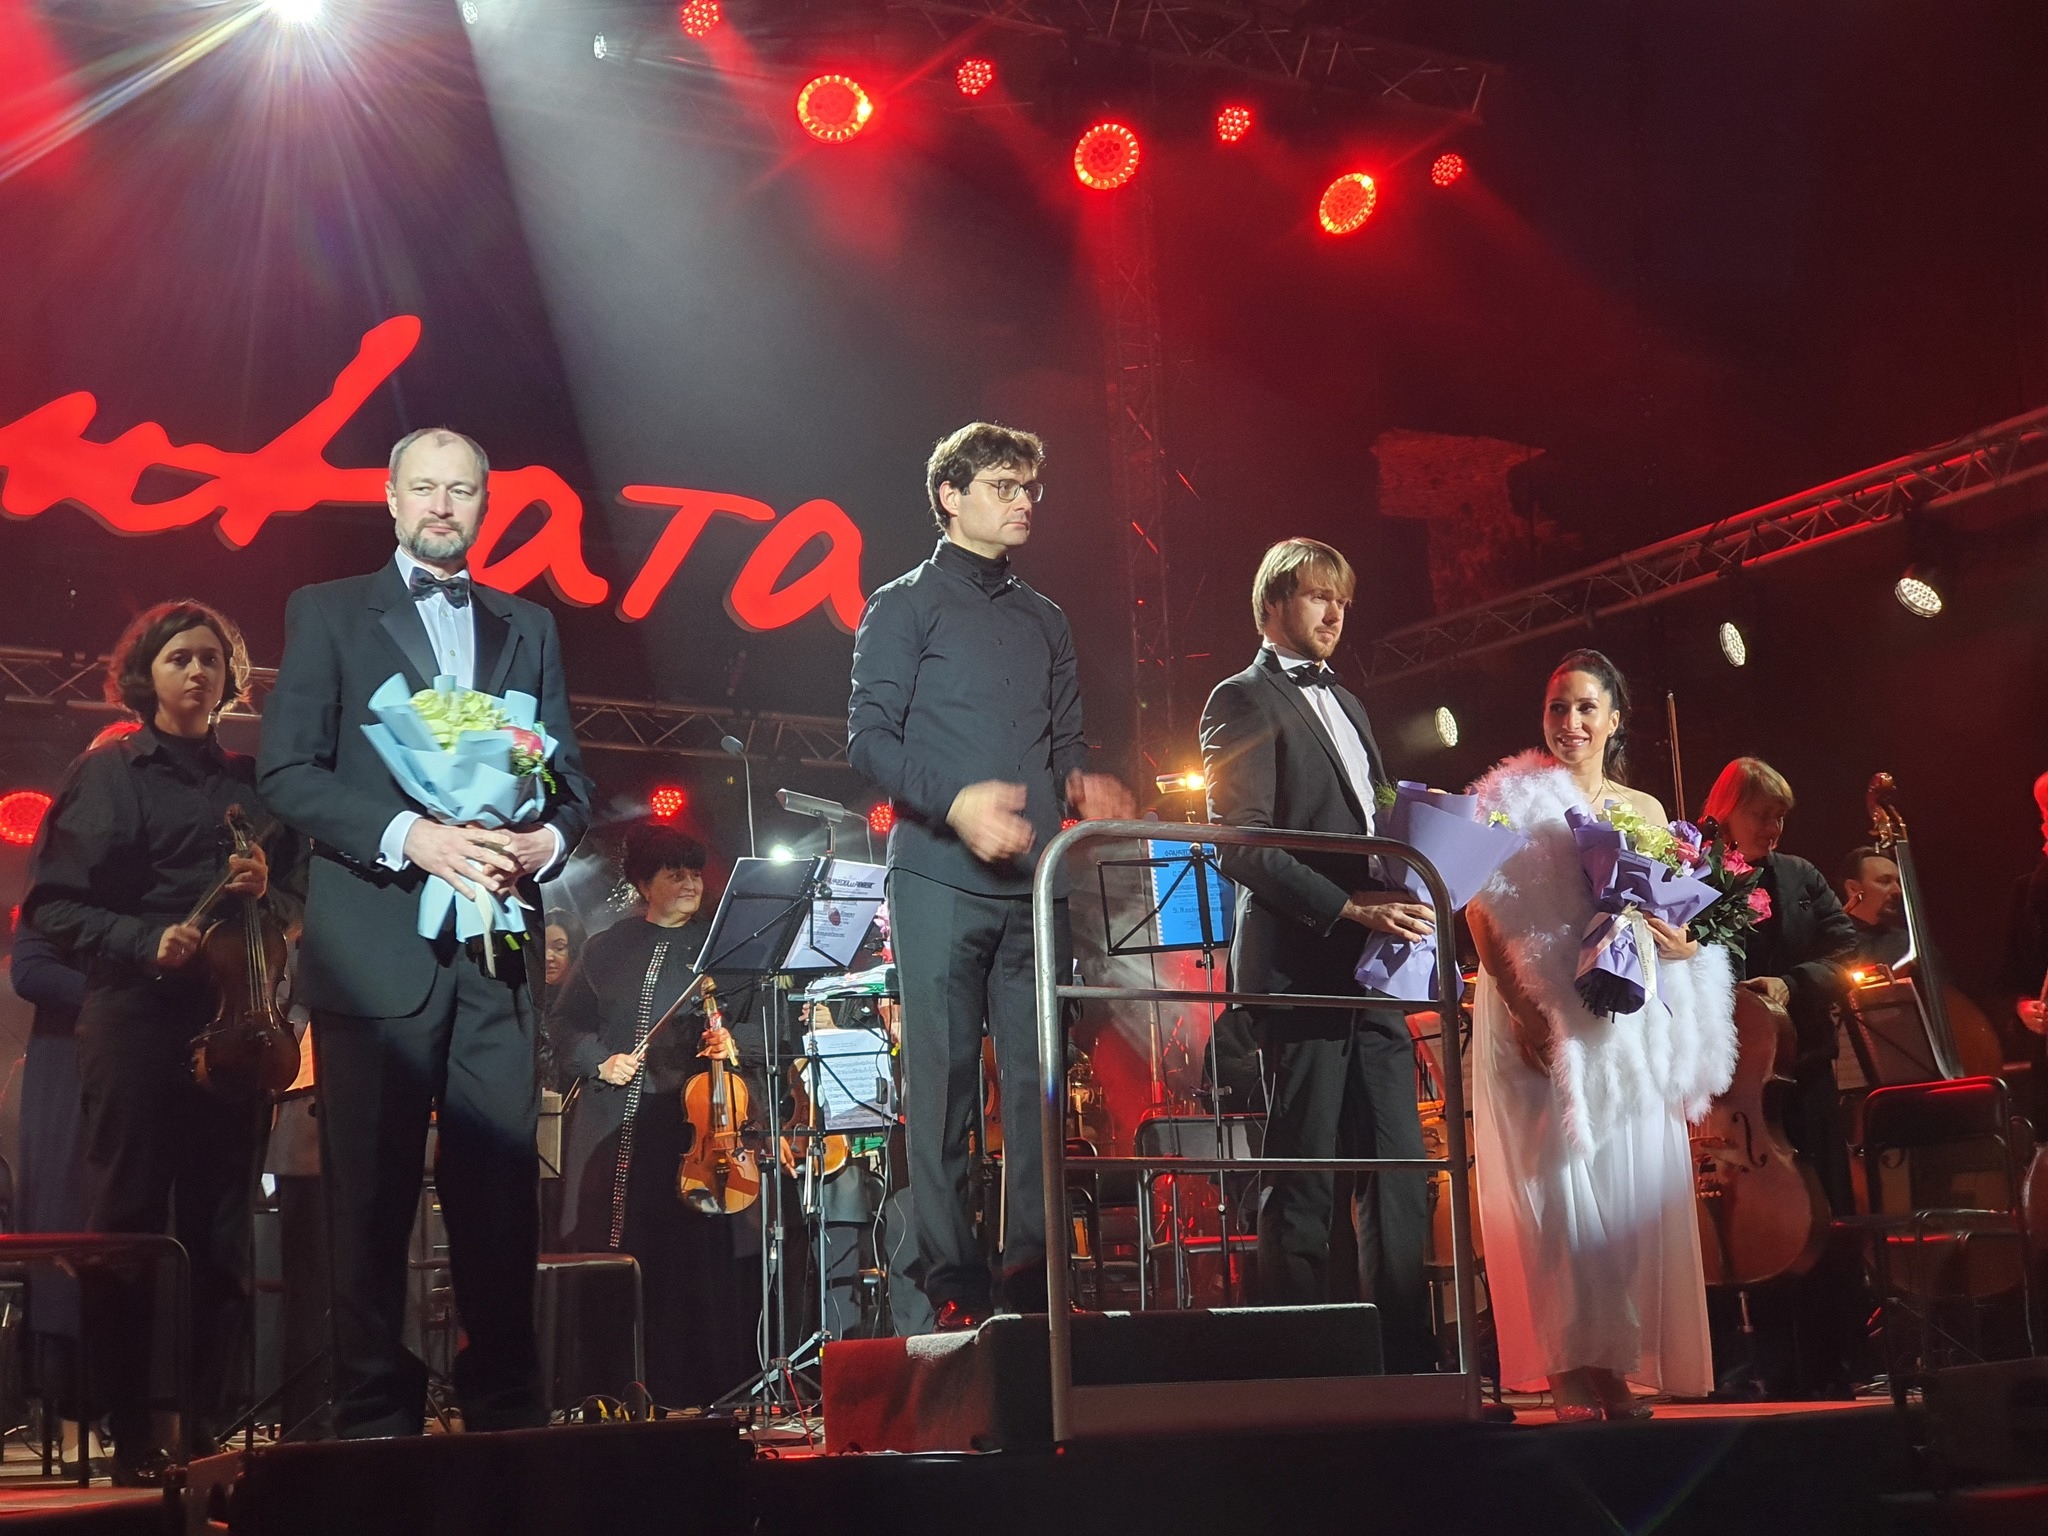 2-й фестиваль "Кантата" проходит в замках и кирхах Калининграда